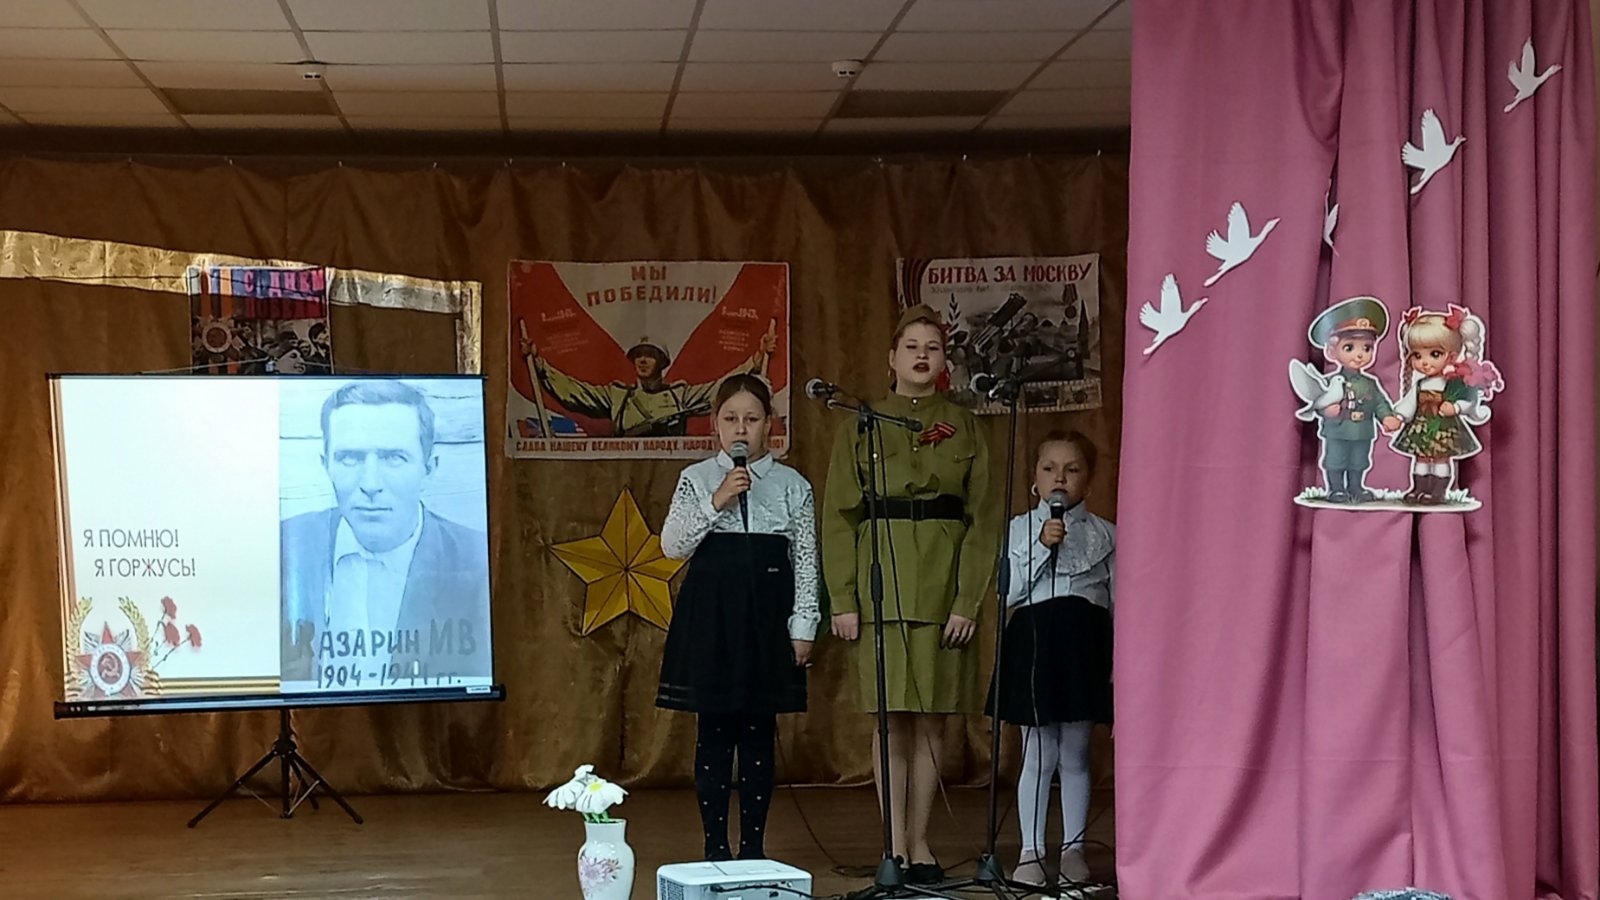 Клочковский ДК приветливо распахнул свои двери, почетным гостям, Детям войны, жителям, детям деревни Клочково

